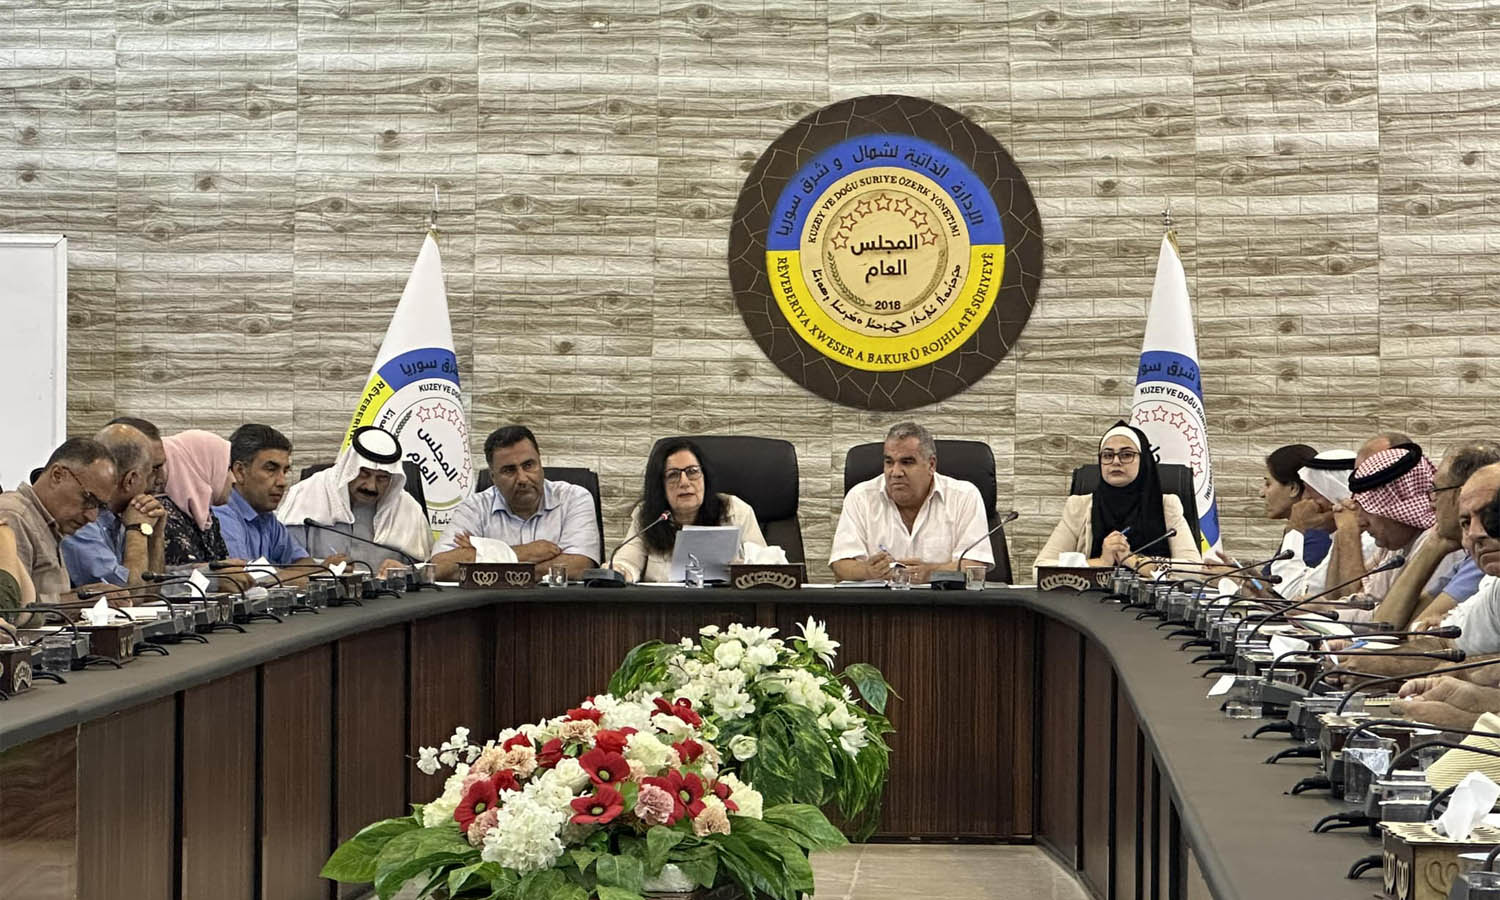 عقد المجلس العام في "الإدارة الذاتية" اجتماع استثنائي للنقاش حول تحسين الوضع الاقتصادي والمعيشي شمال شرقي سوريا- 2 من آب 2023 (الإدارة الذاتية)